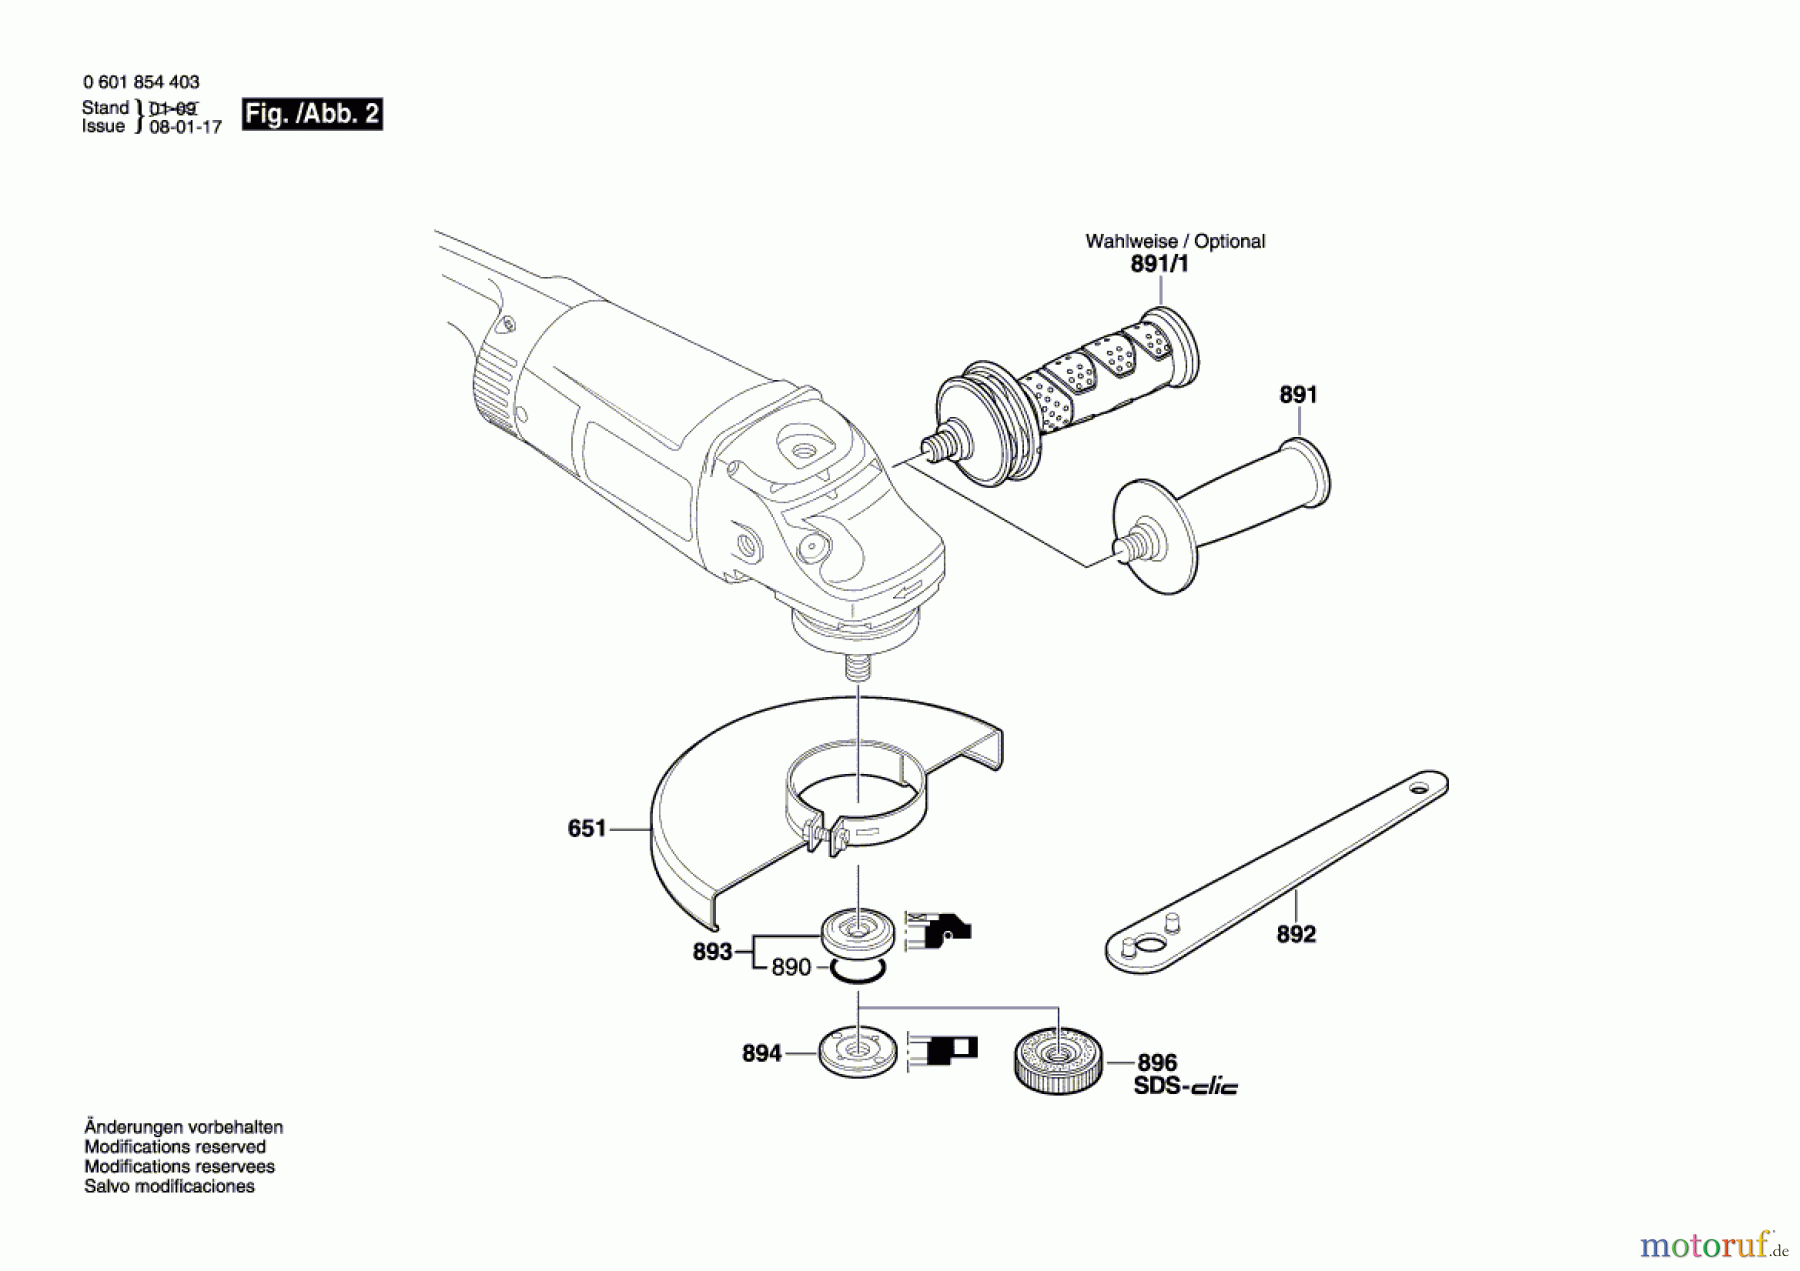  Bosch Werkzeug Winkelschleifer GWS 24-230 Seite 2